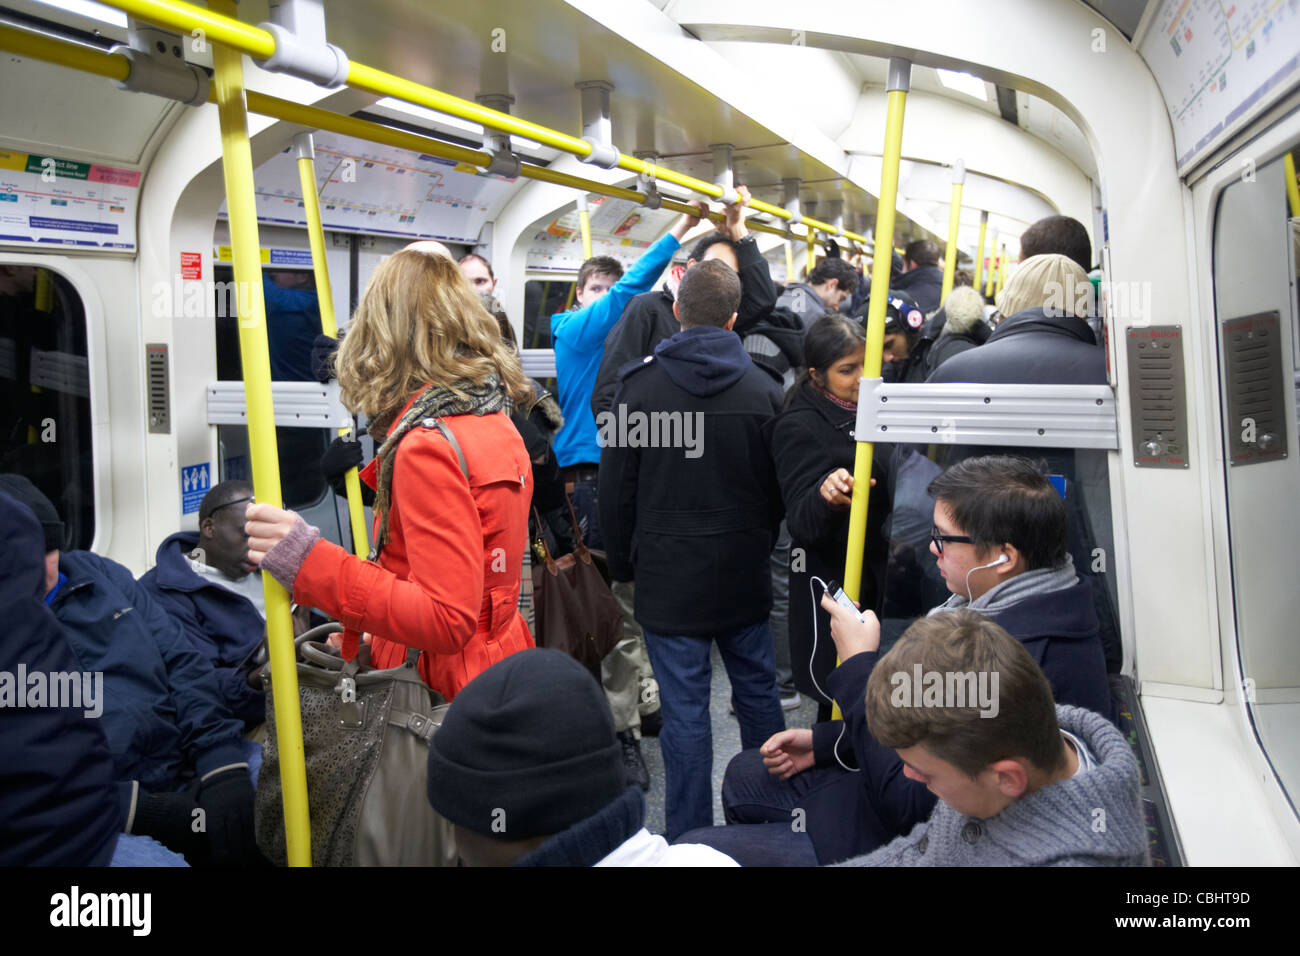 Fille avec manteau rouge debout sur occupation train de tube entouré par des gens sur le métro de Londres Angleterre Royaume-Uni uk Banque D'Images